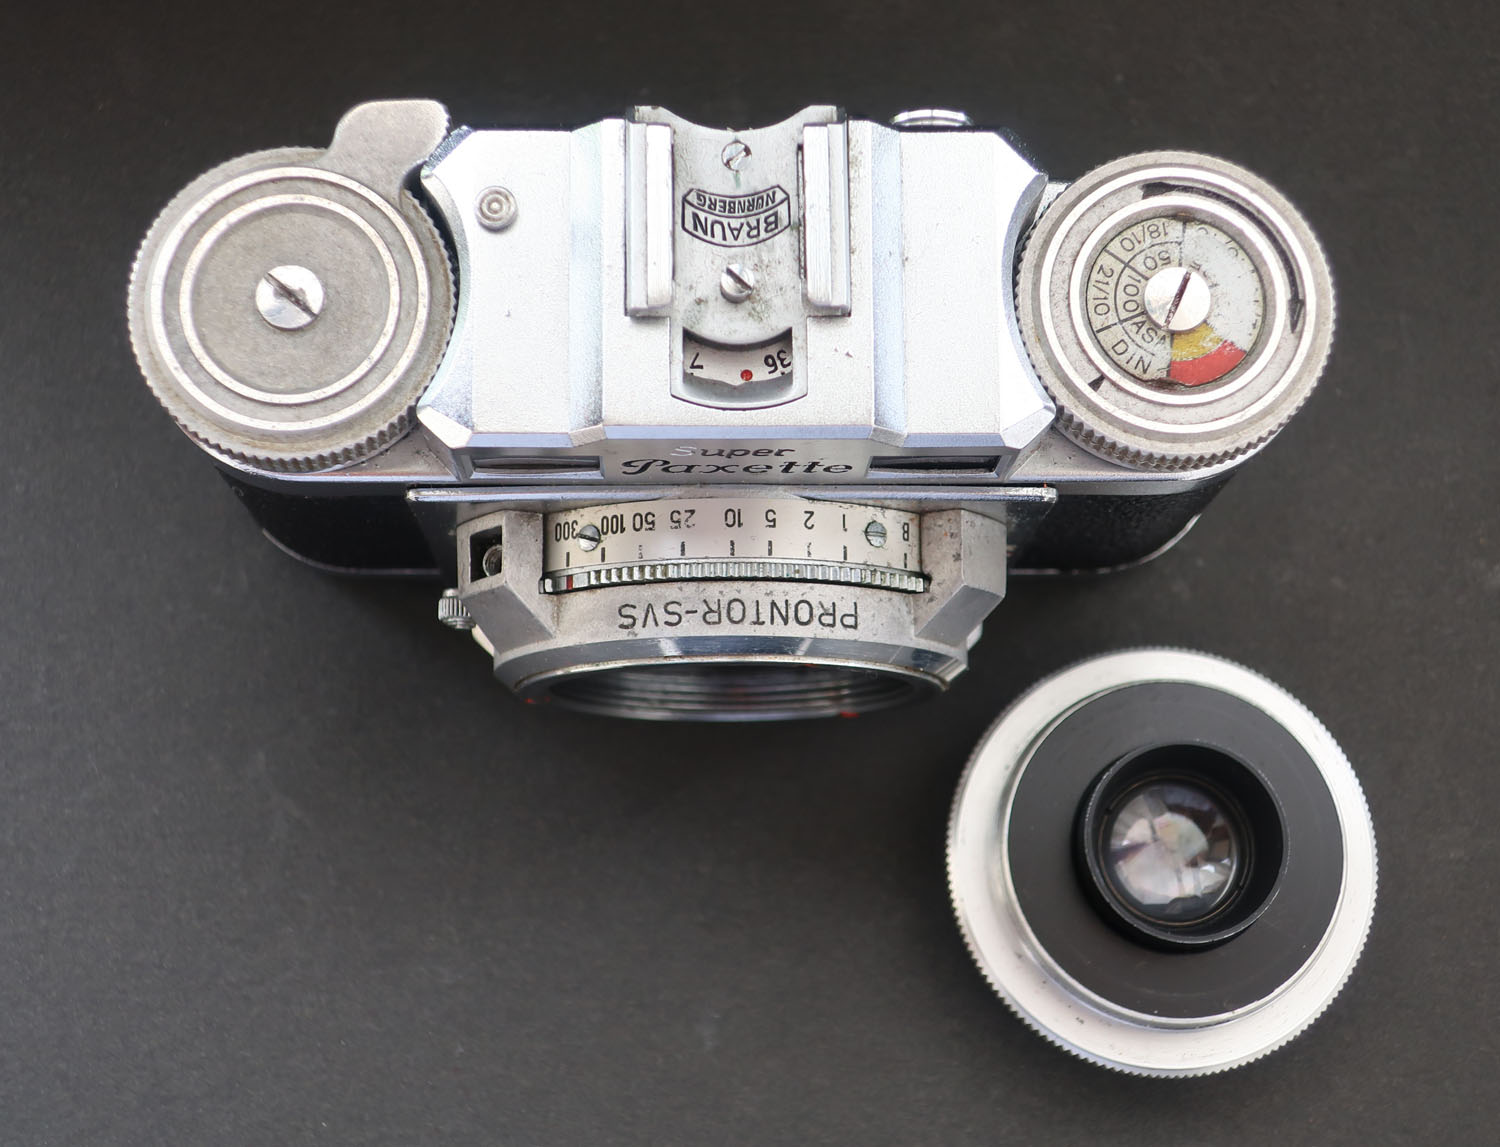 ドイツ・ブラウンのクラシックカメラ・パクセッテ『Paxette』 - カメラ